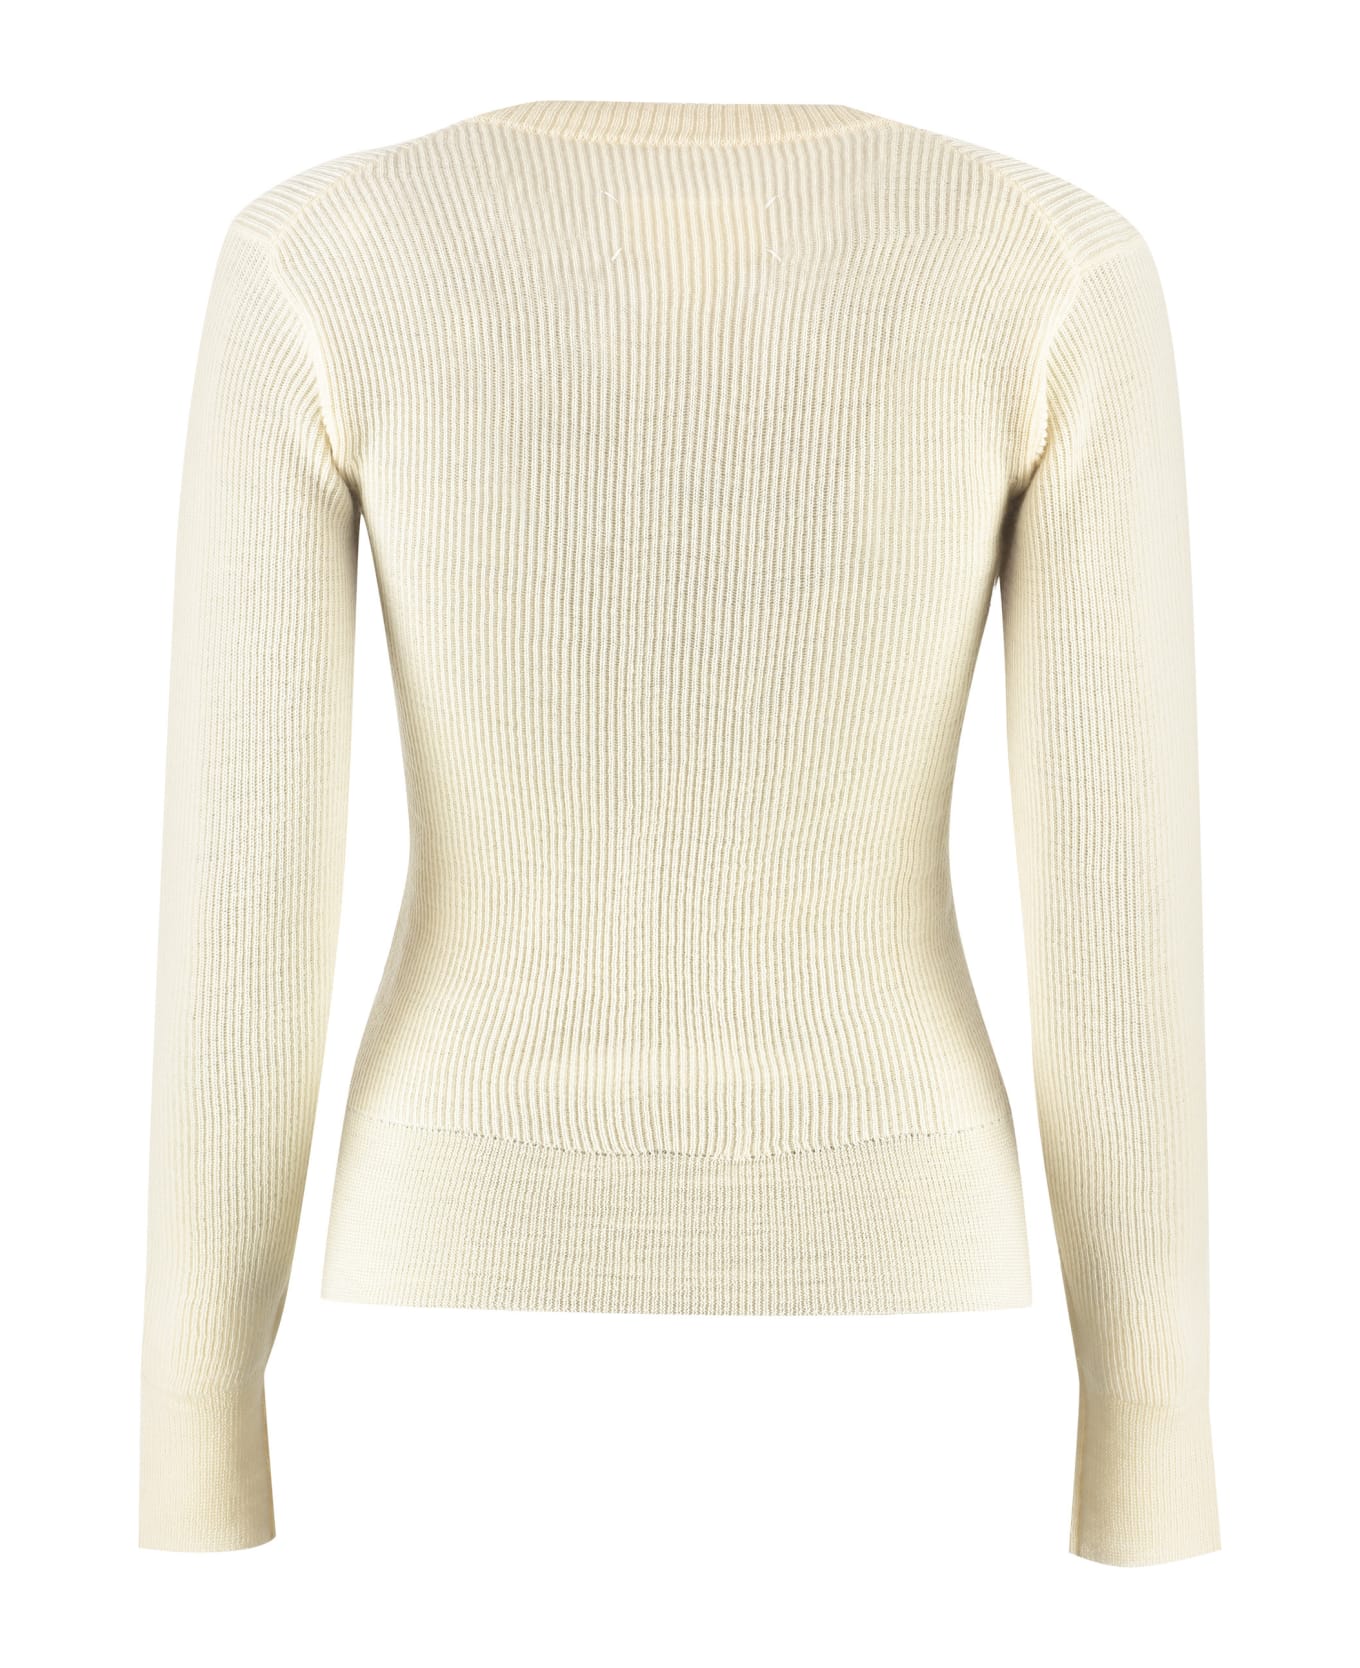 Maison Margiela Ribbed Sweater - White ニットウェア